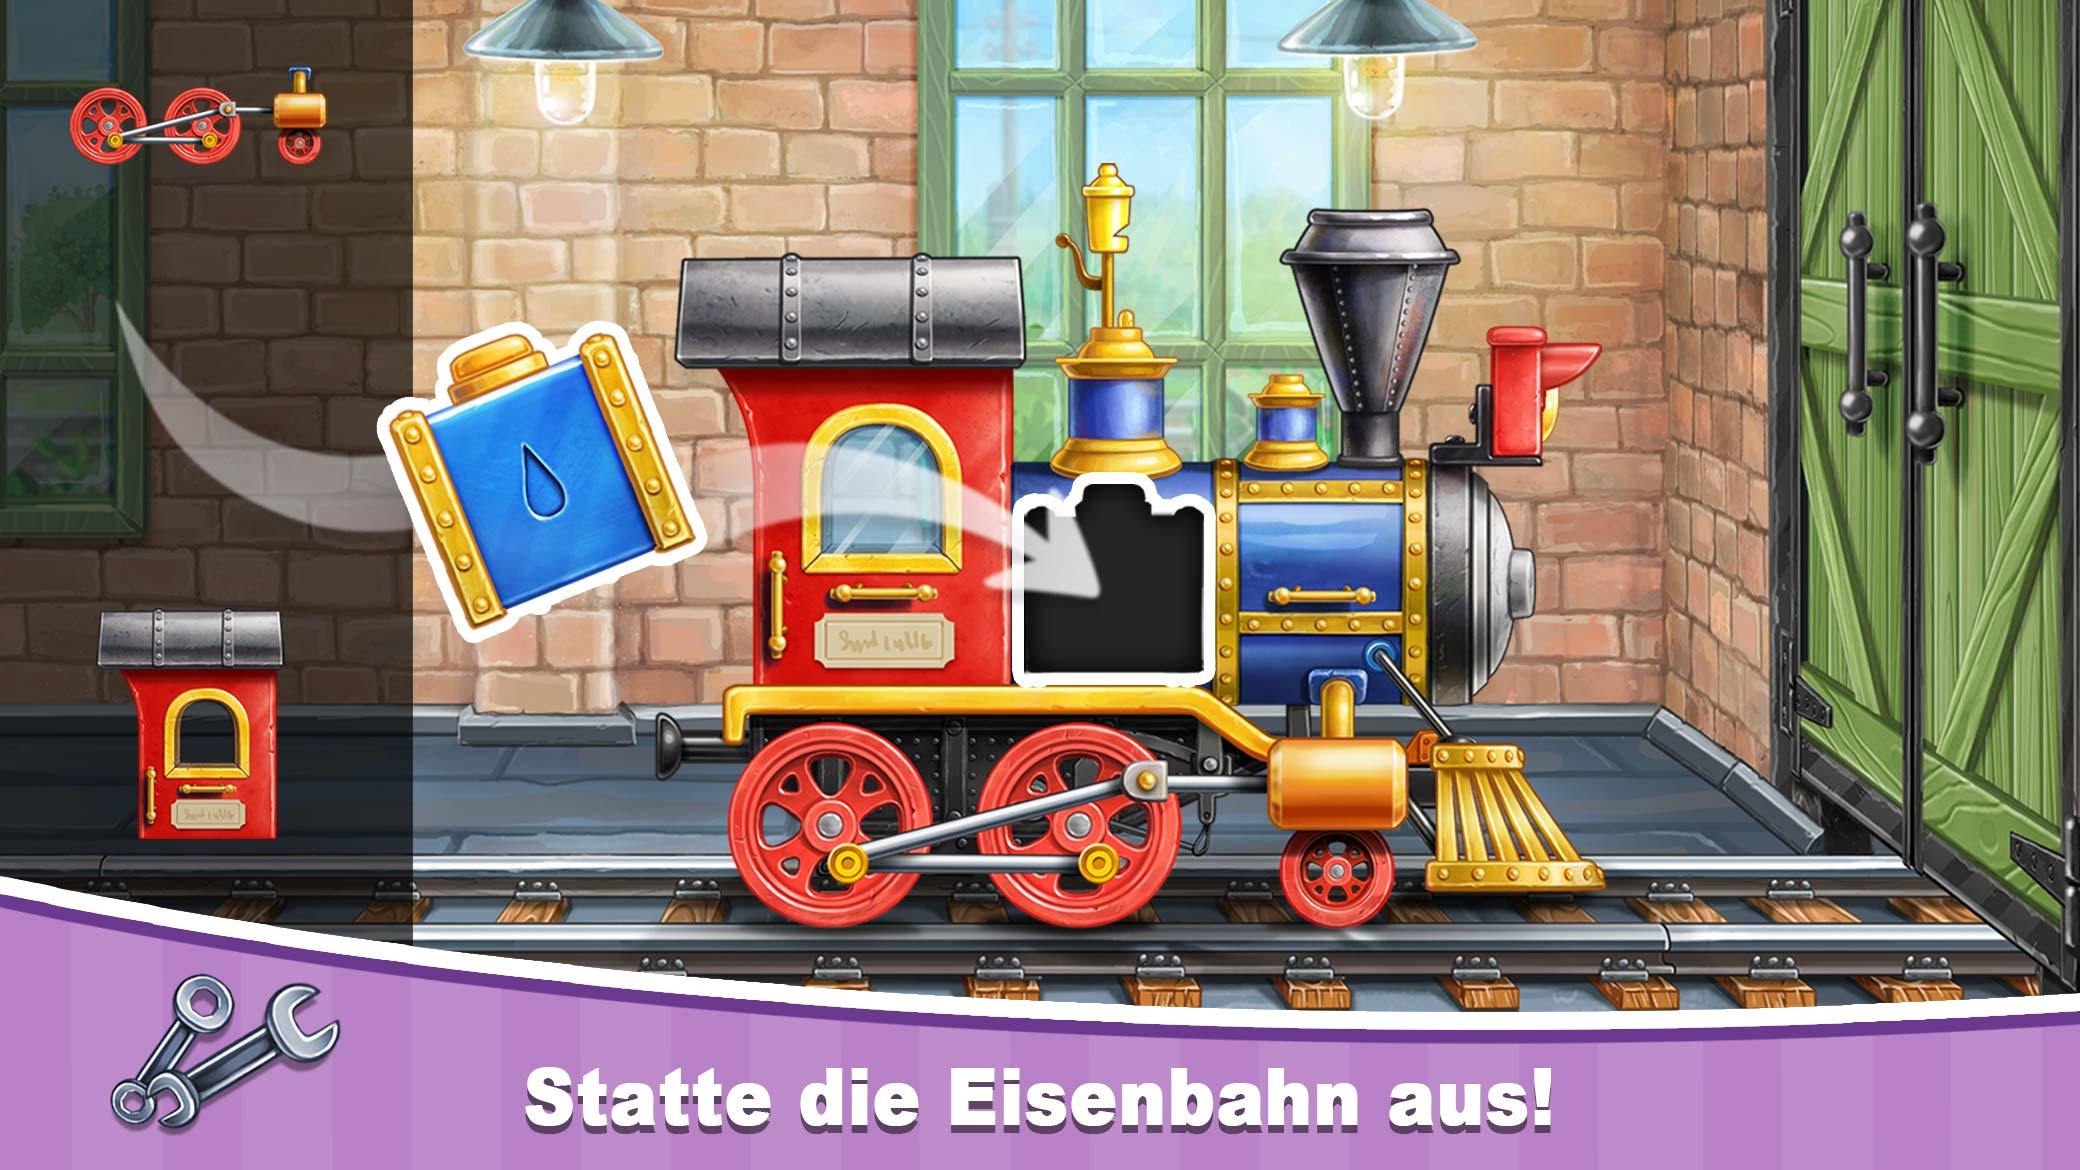 Screenshot 1 of Bahnhofsspiel für Kinder: Bahn 12.0.20